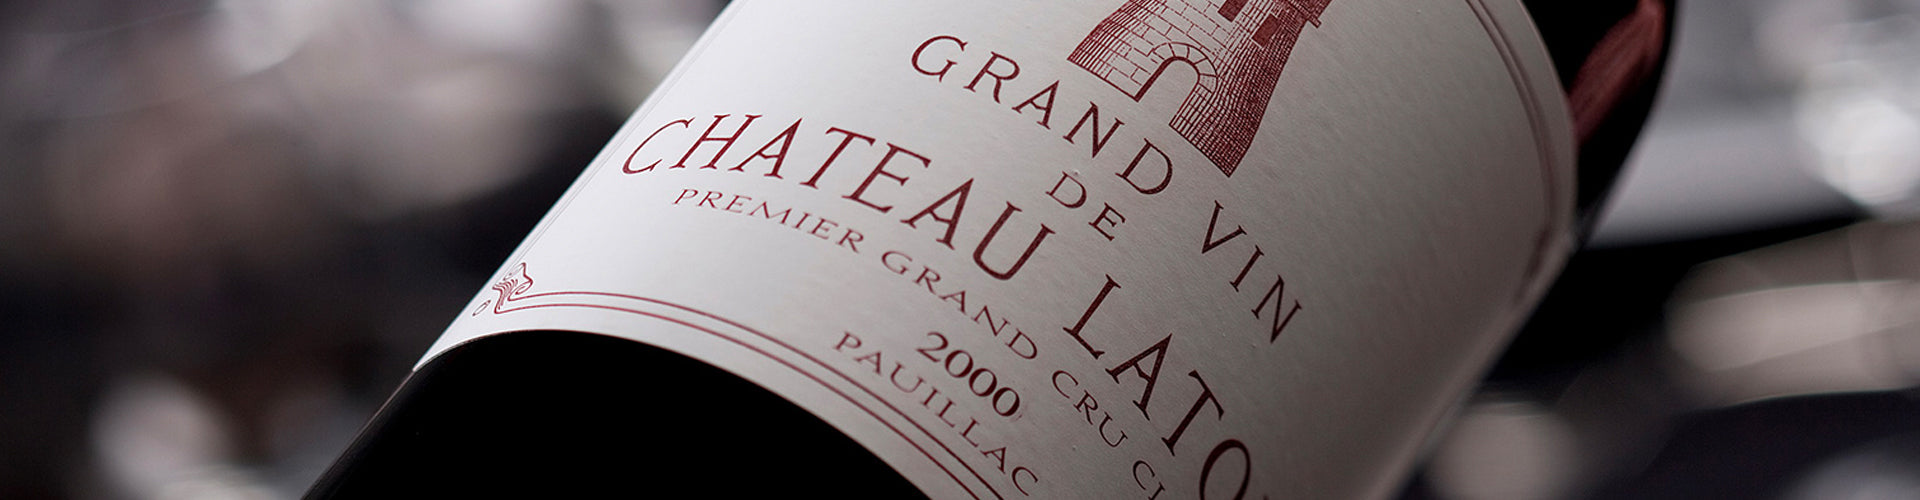 Château Latour Grand Vin Bottle 2000